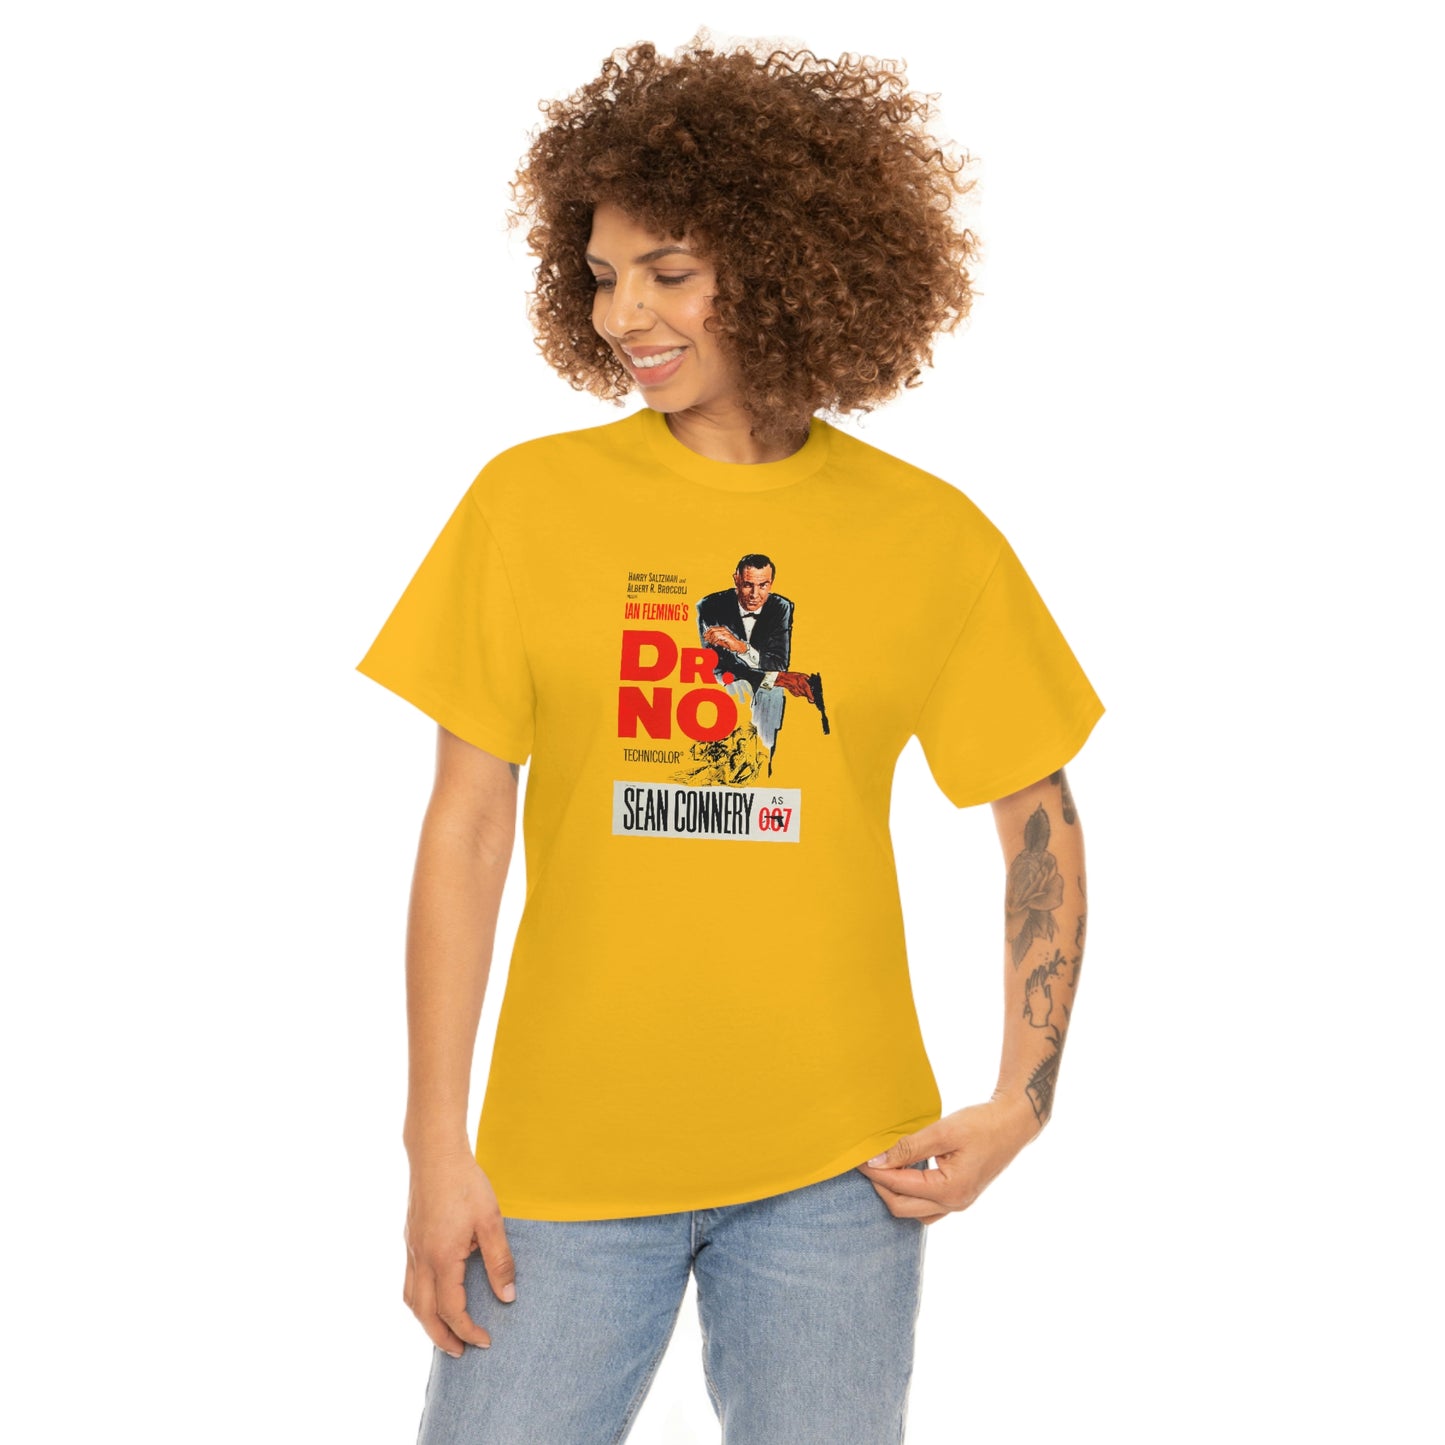 Dr. No T-Shirt